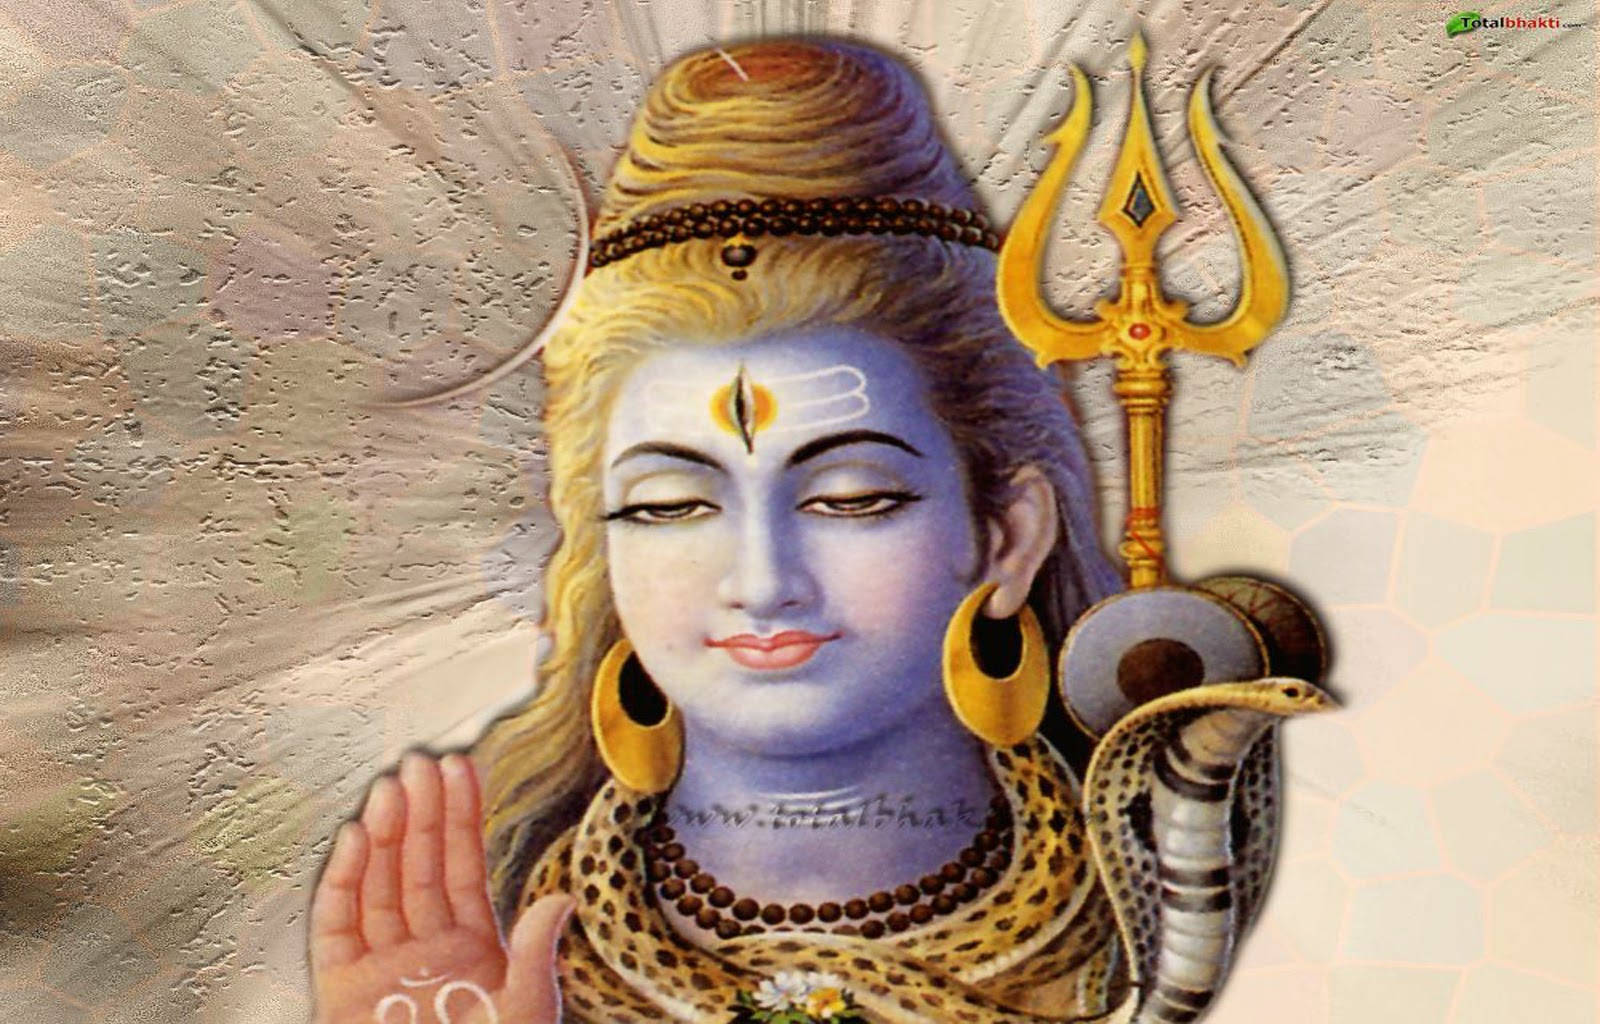 Lord Shiva Gold Earrings Wallpaper